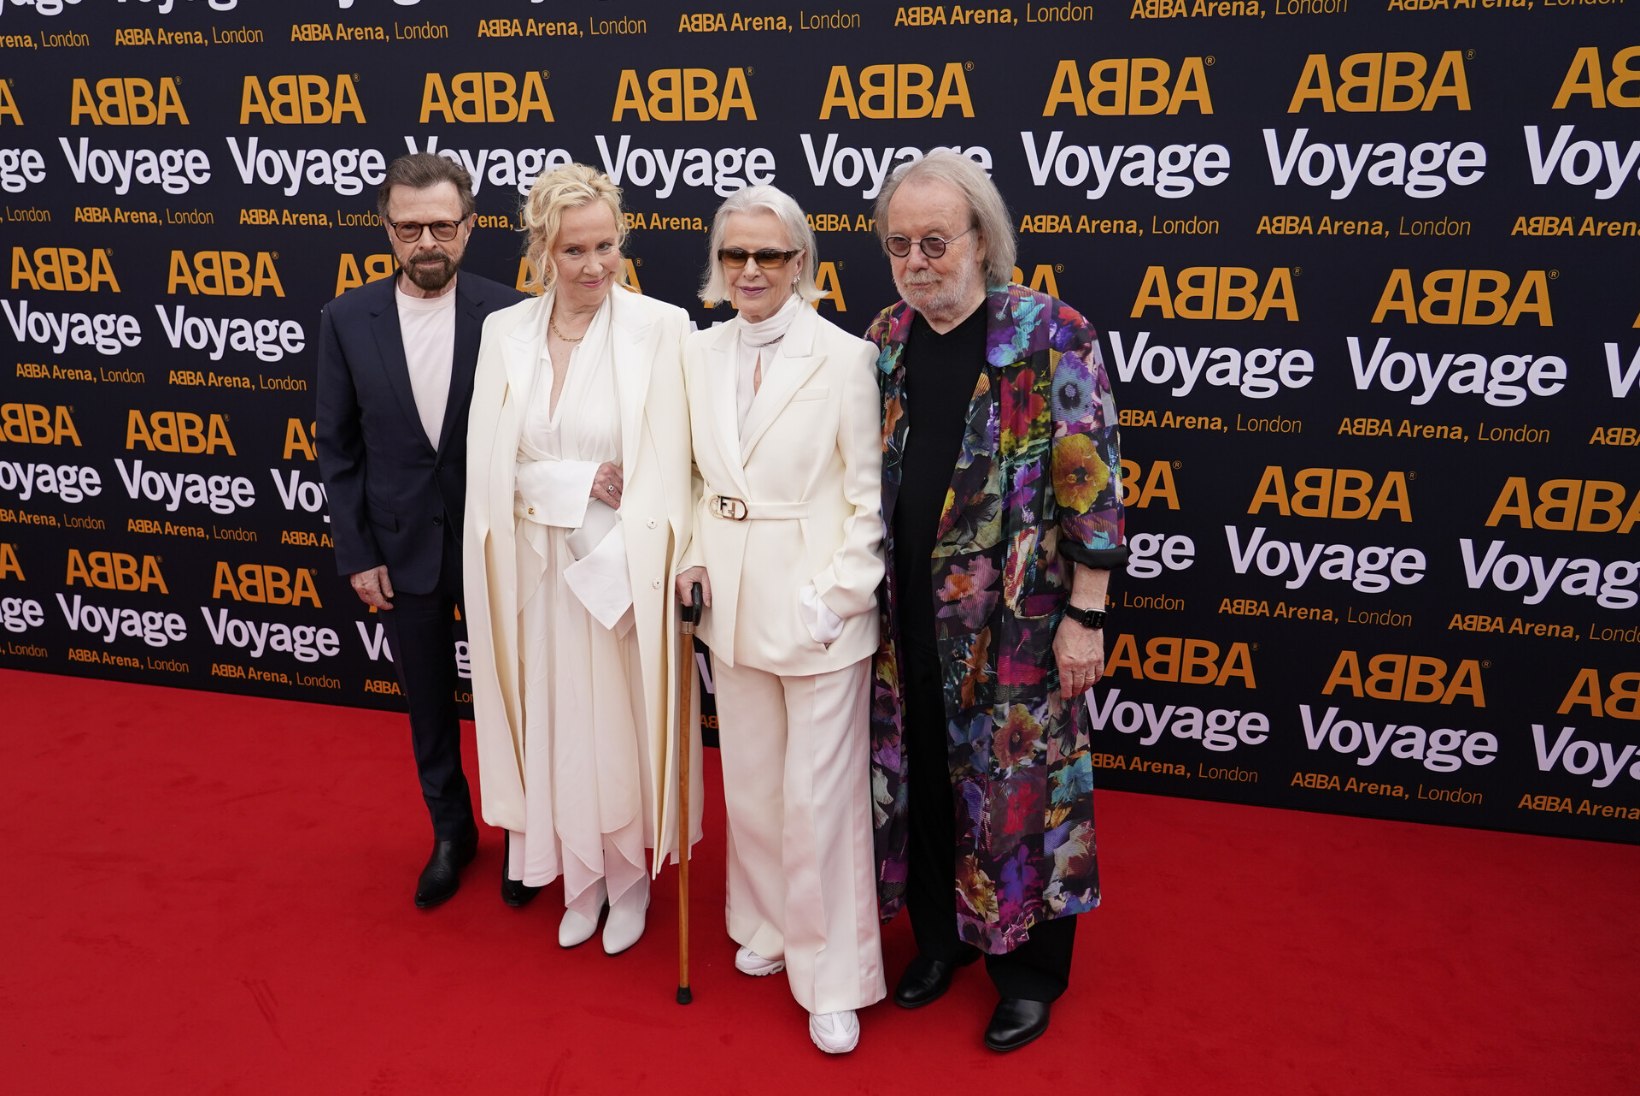 VIDEO | ABBA astus üle 36 aasta täiskoosseisus avalikkuse ette!